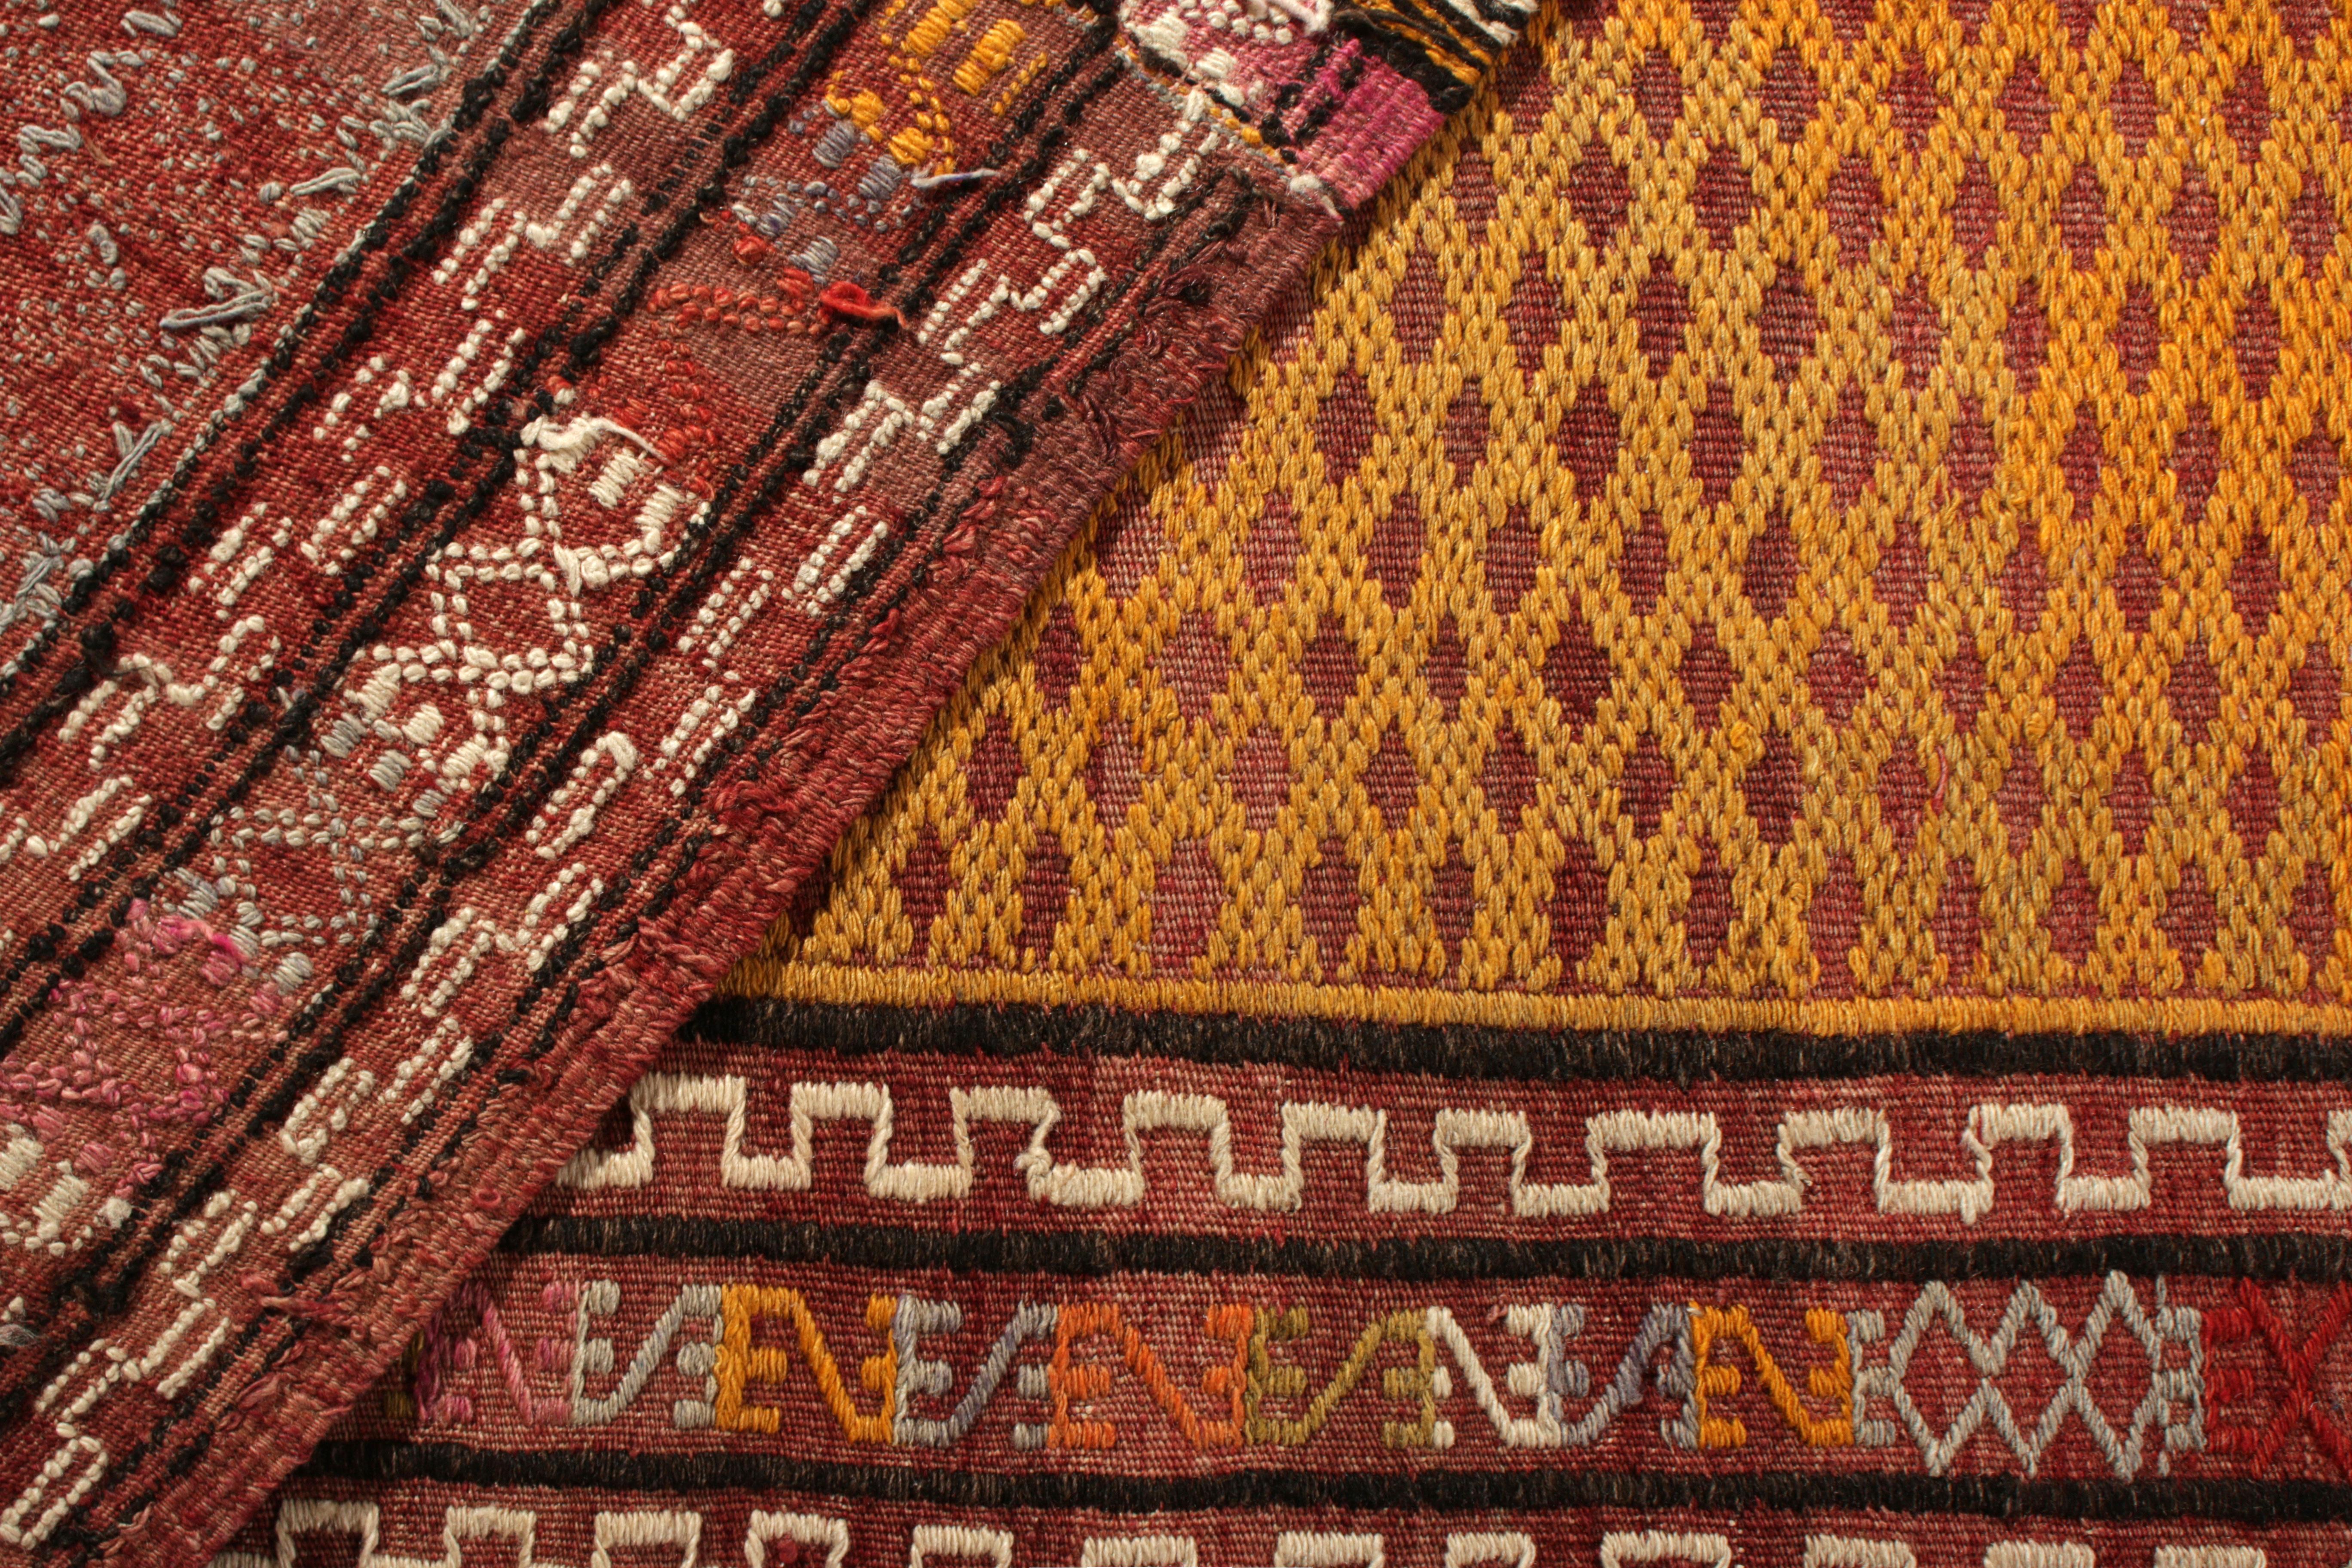 Handmade Vintage Turkish Kilim Rug Gold Multi-Color Textural Geometric Pattern 1